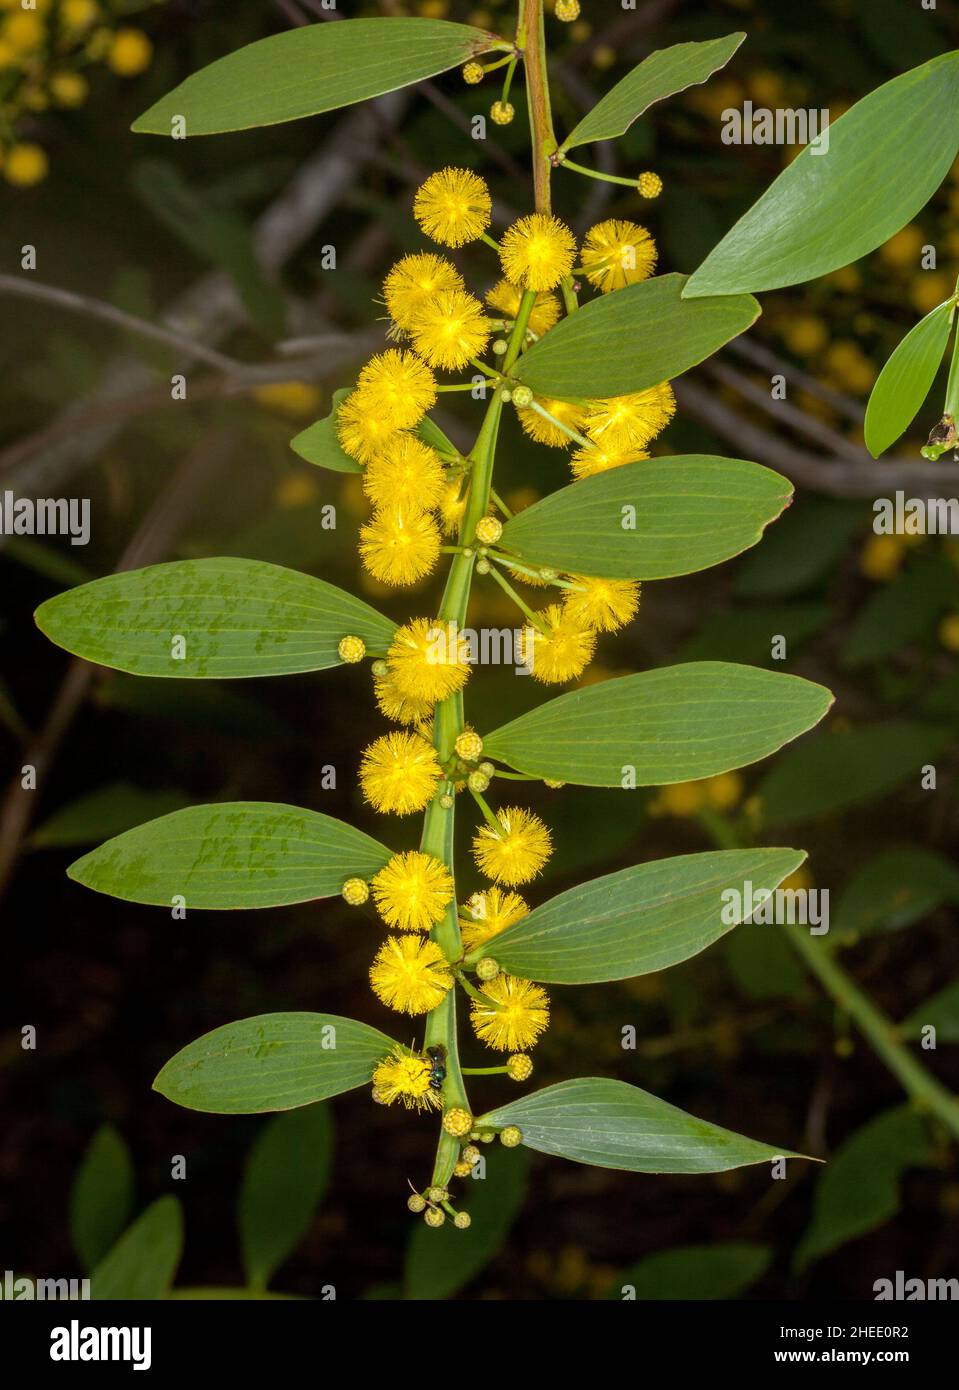 Fiori selvatici australiani, grappolo di fiori profumati gialli vividi e foglie verdi di albero waterle / Acacia su sfondo scuro Foto Stock